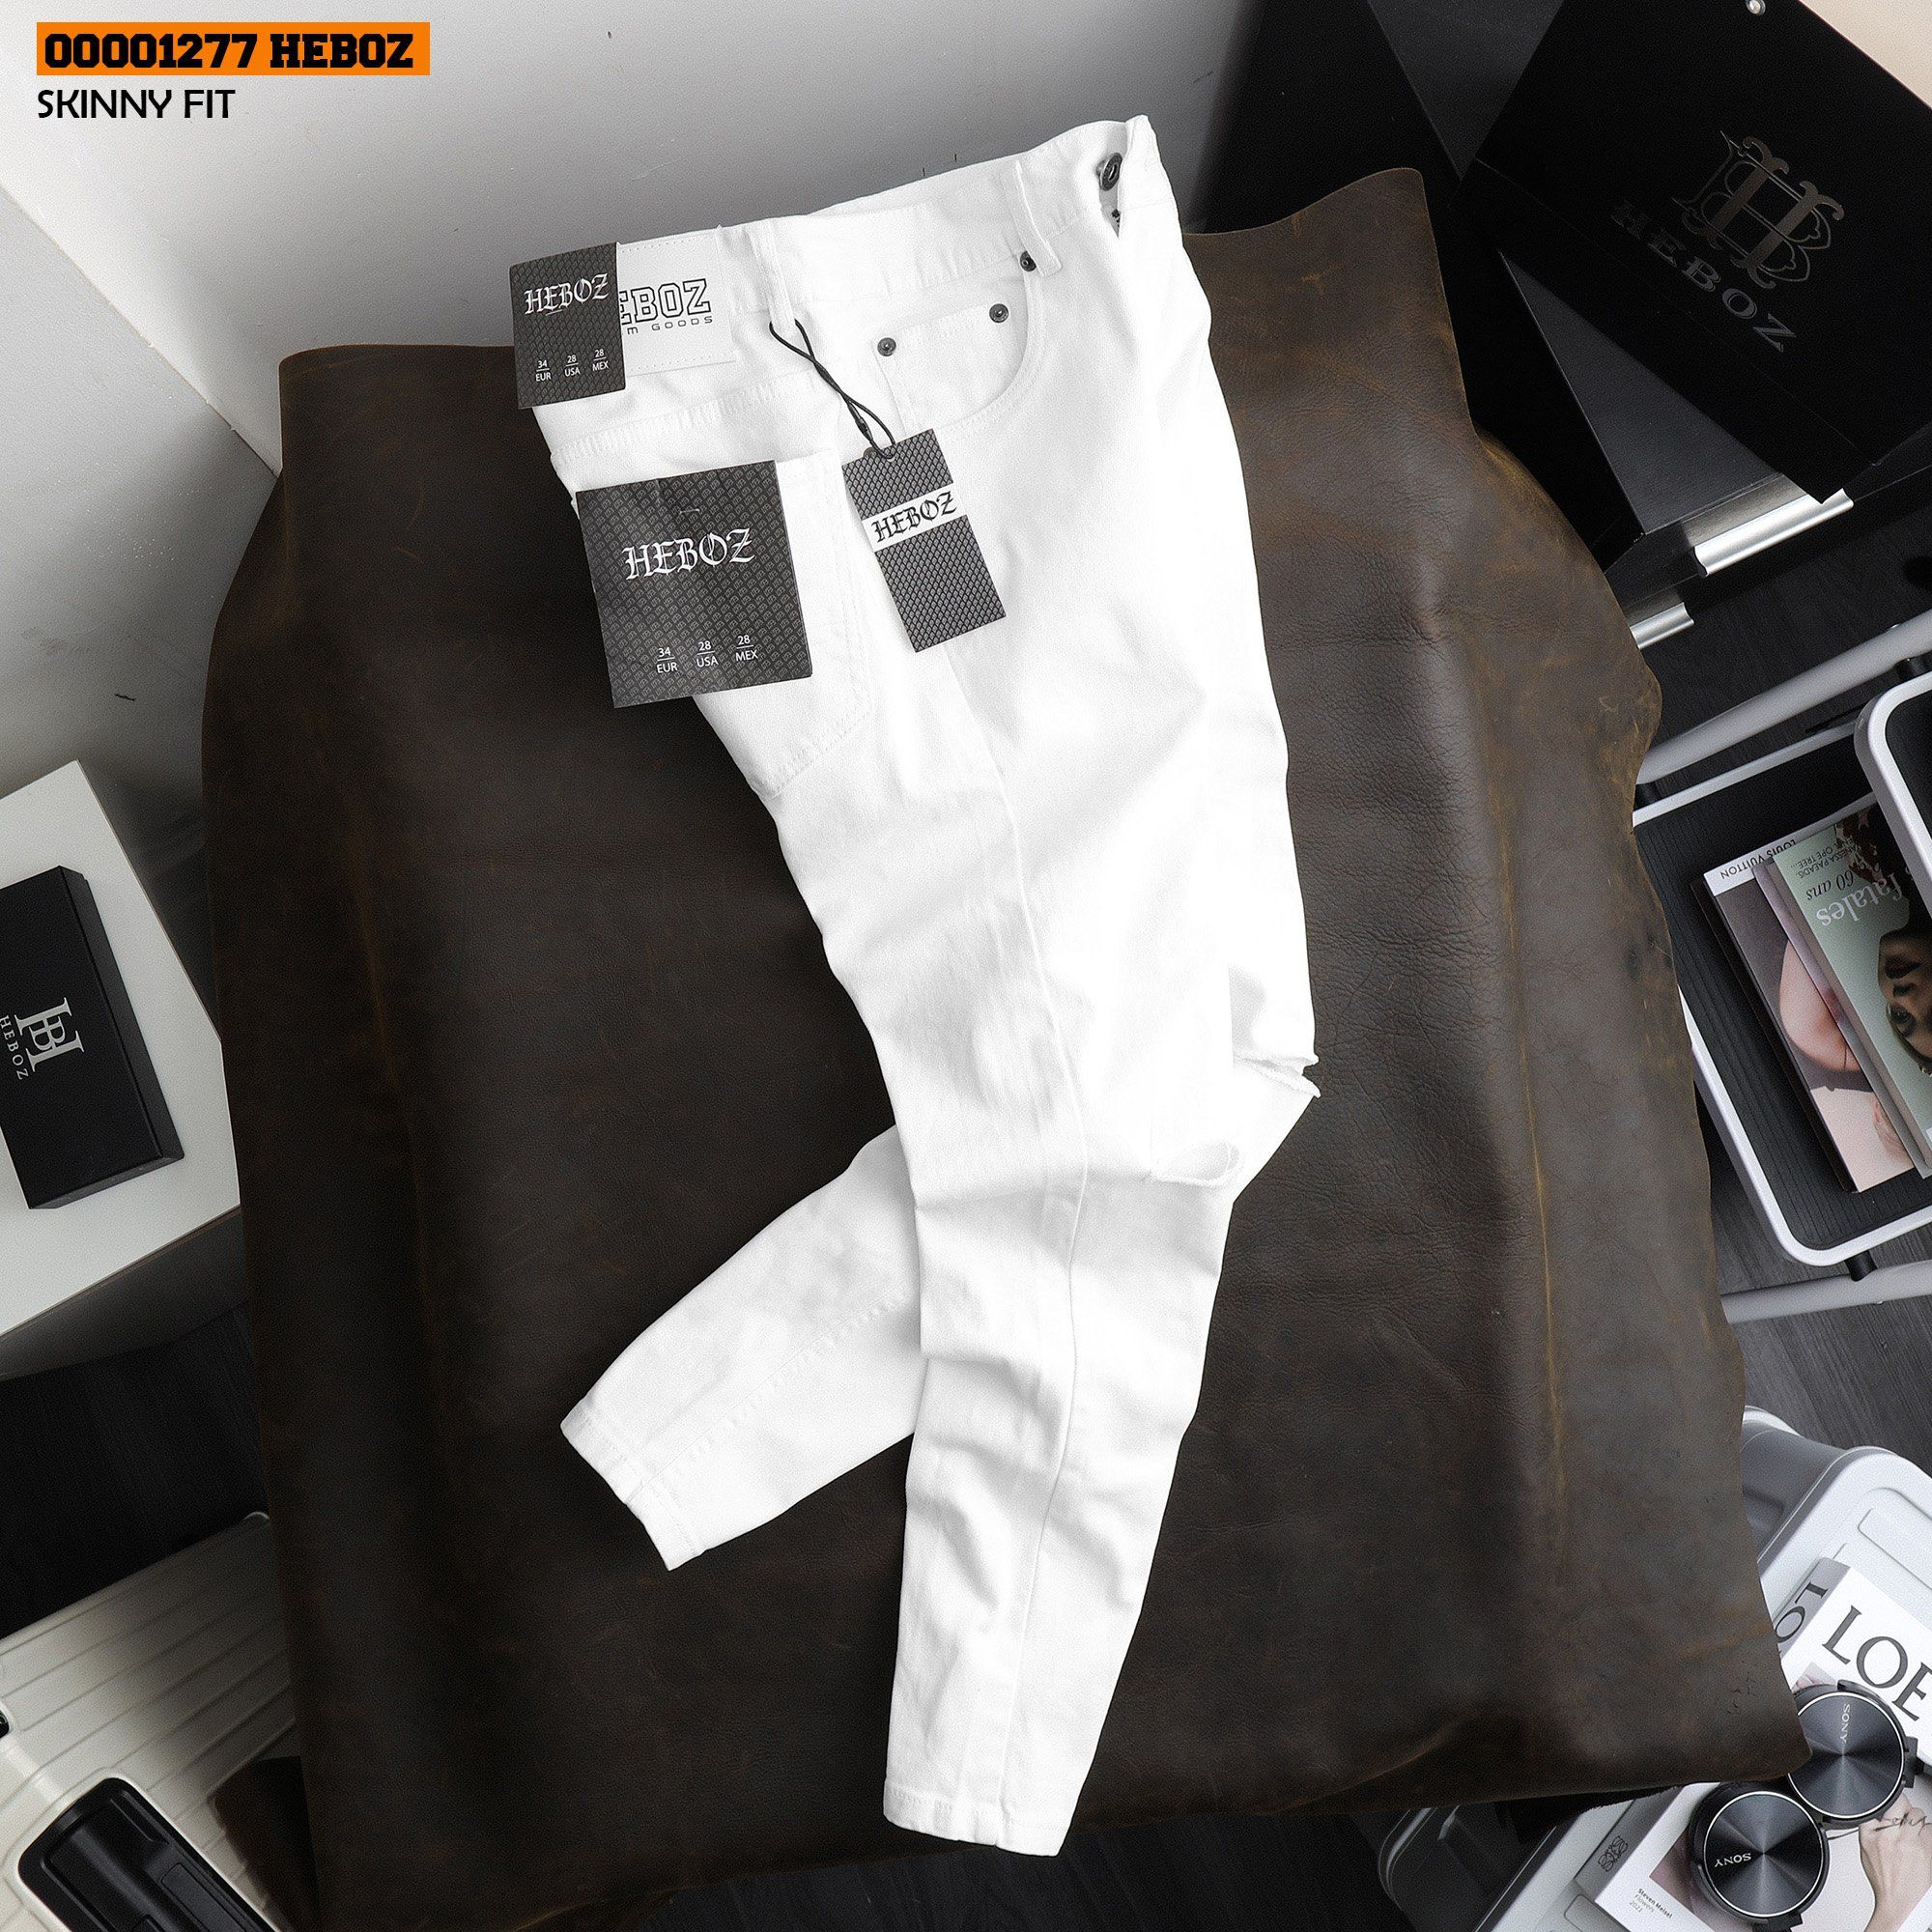  Quần jean trắng rách skinny Heboz - 00001277 